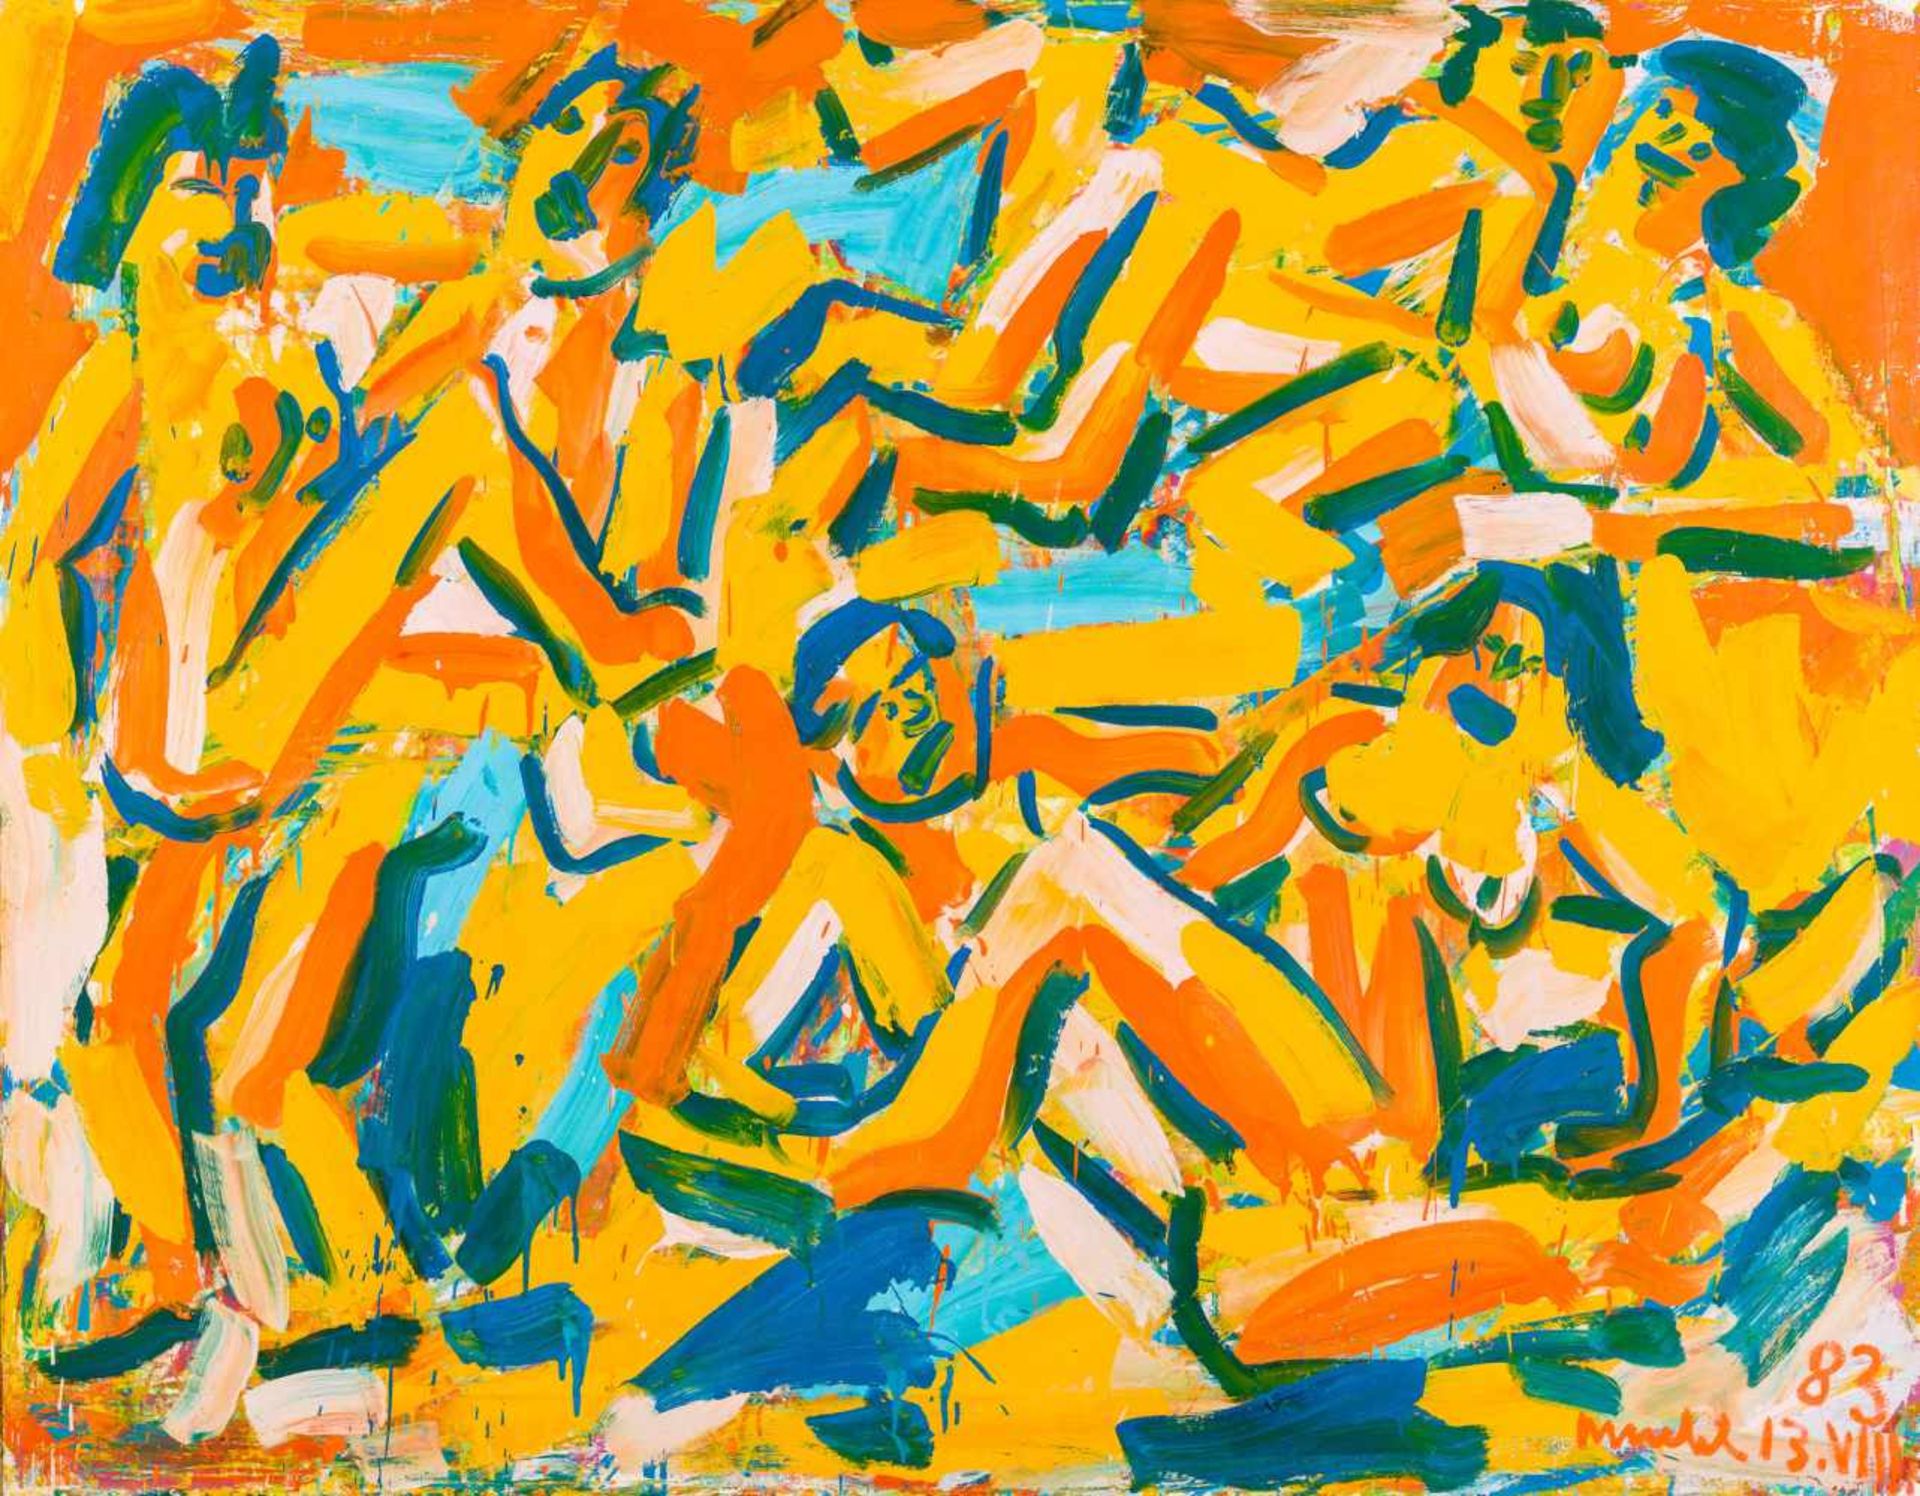 Otto Mühl (hs art)Grodnau 1925 - 2013 MoncarapachoDrei PärchenÖl auf Leinwand / oil on canvas139,5 x